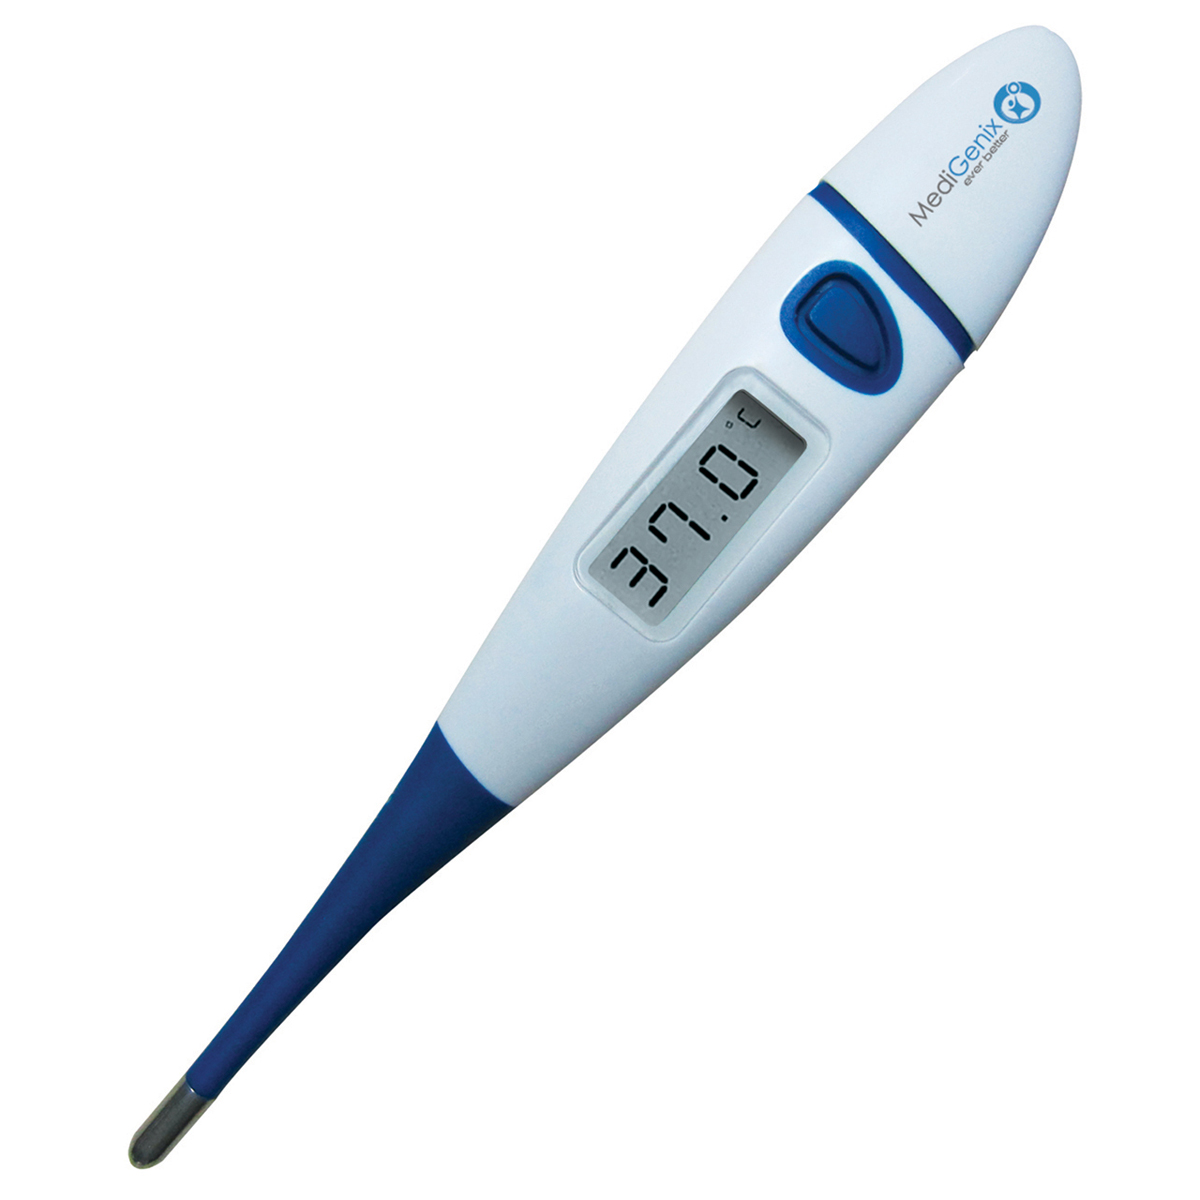 MediGenix 10 second Flexi-tip Digital Thermometer